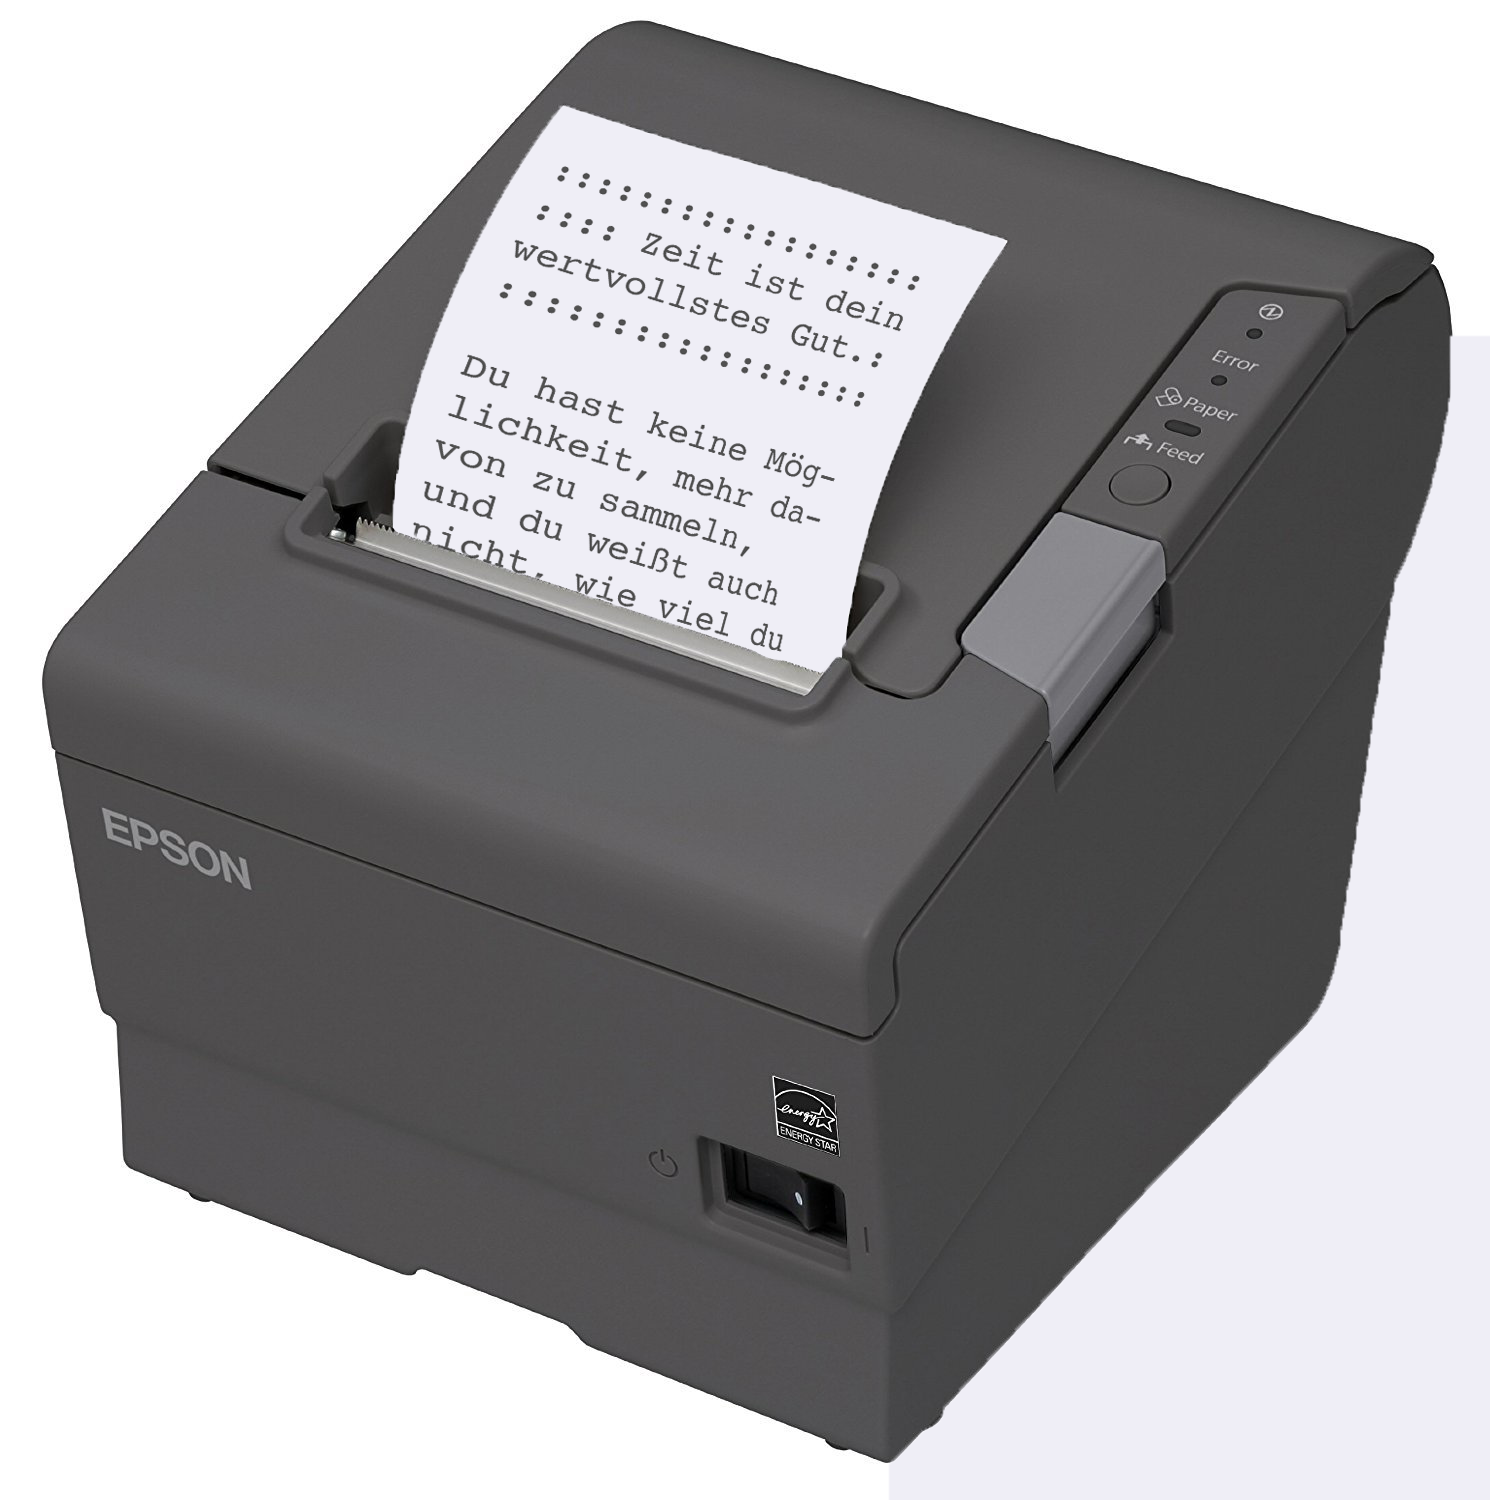 Gehackte Kassenzettel-Drucker kämpfen für bessere Arbeitsbedingungen